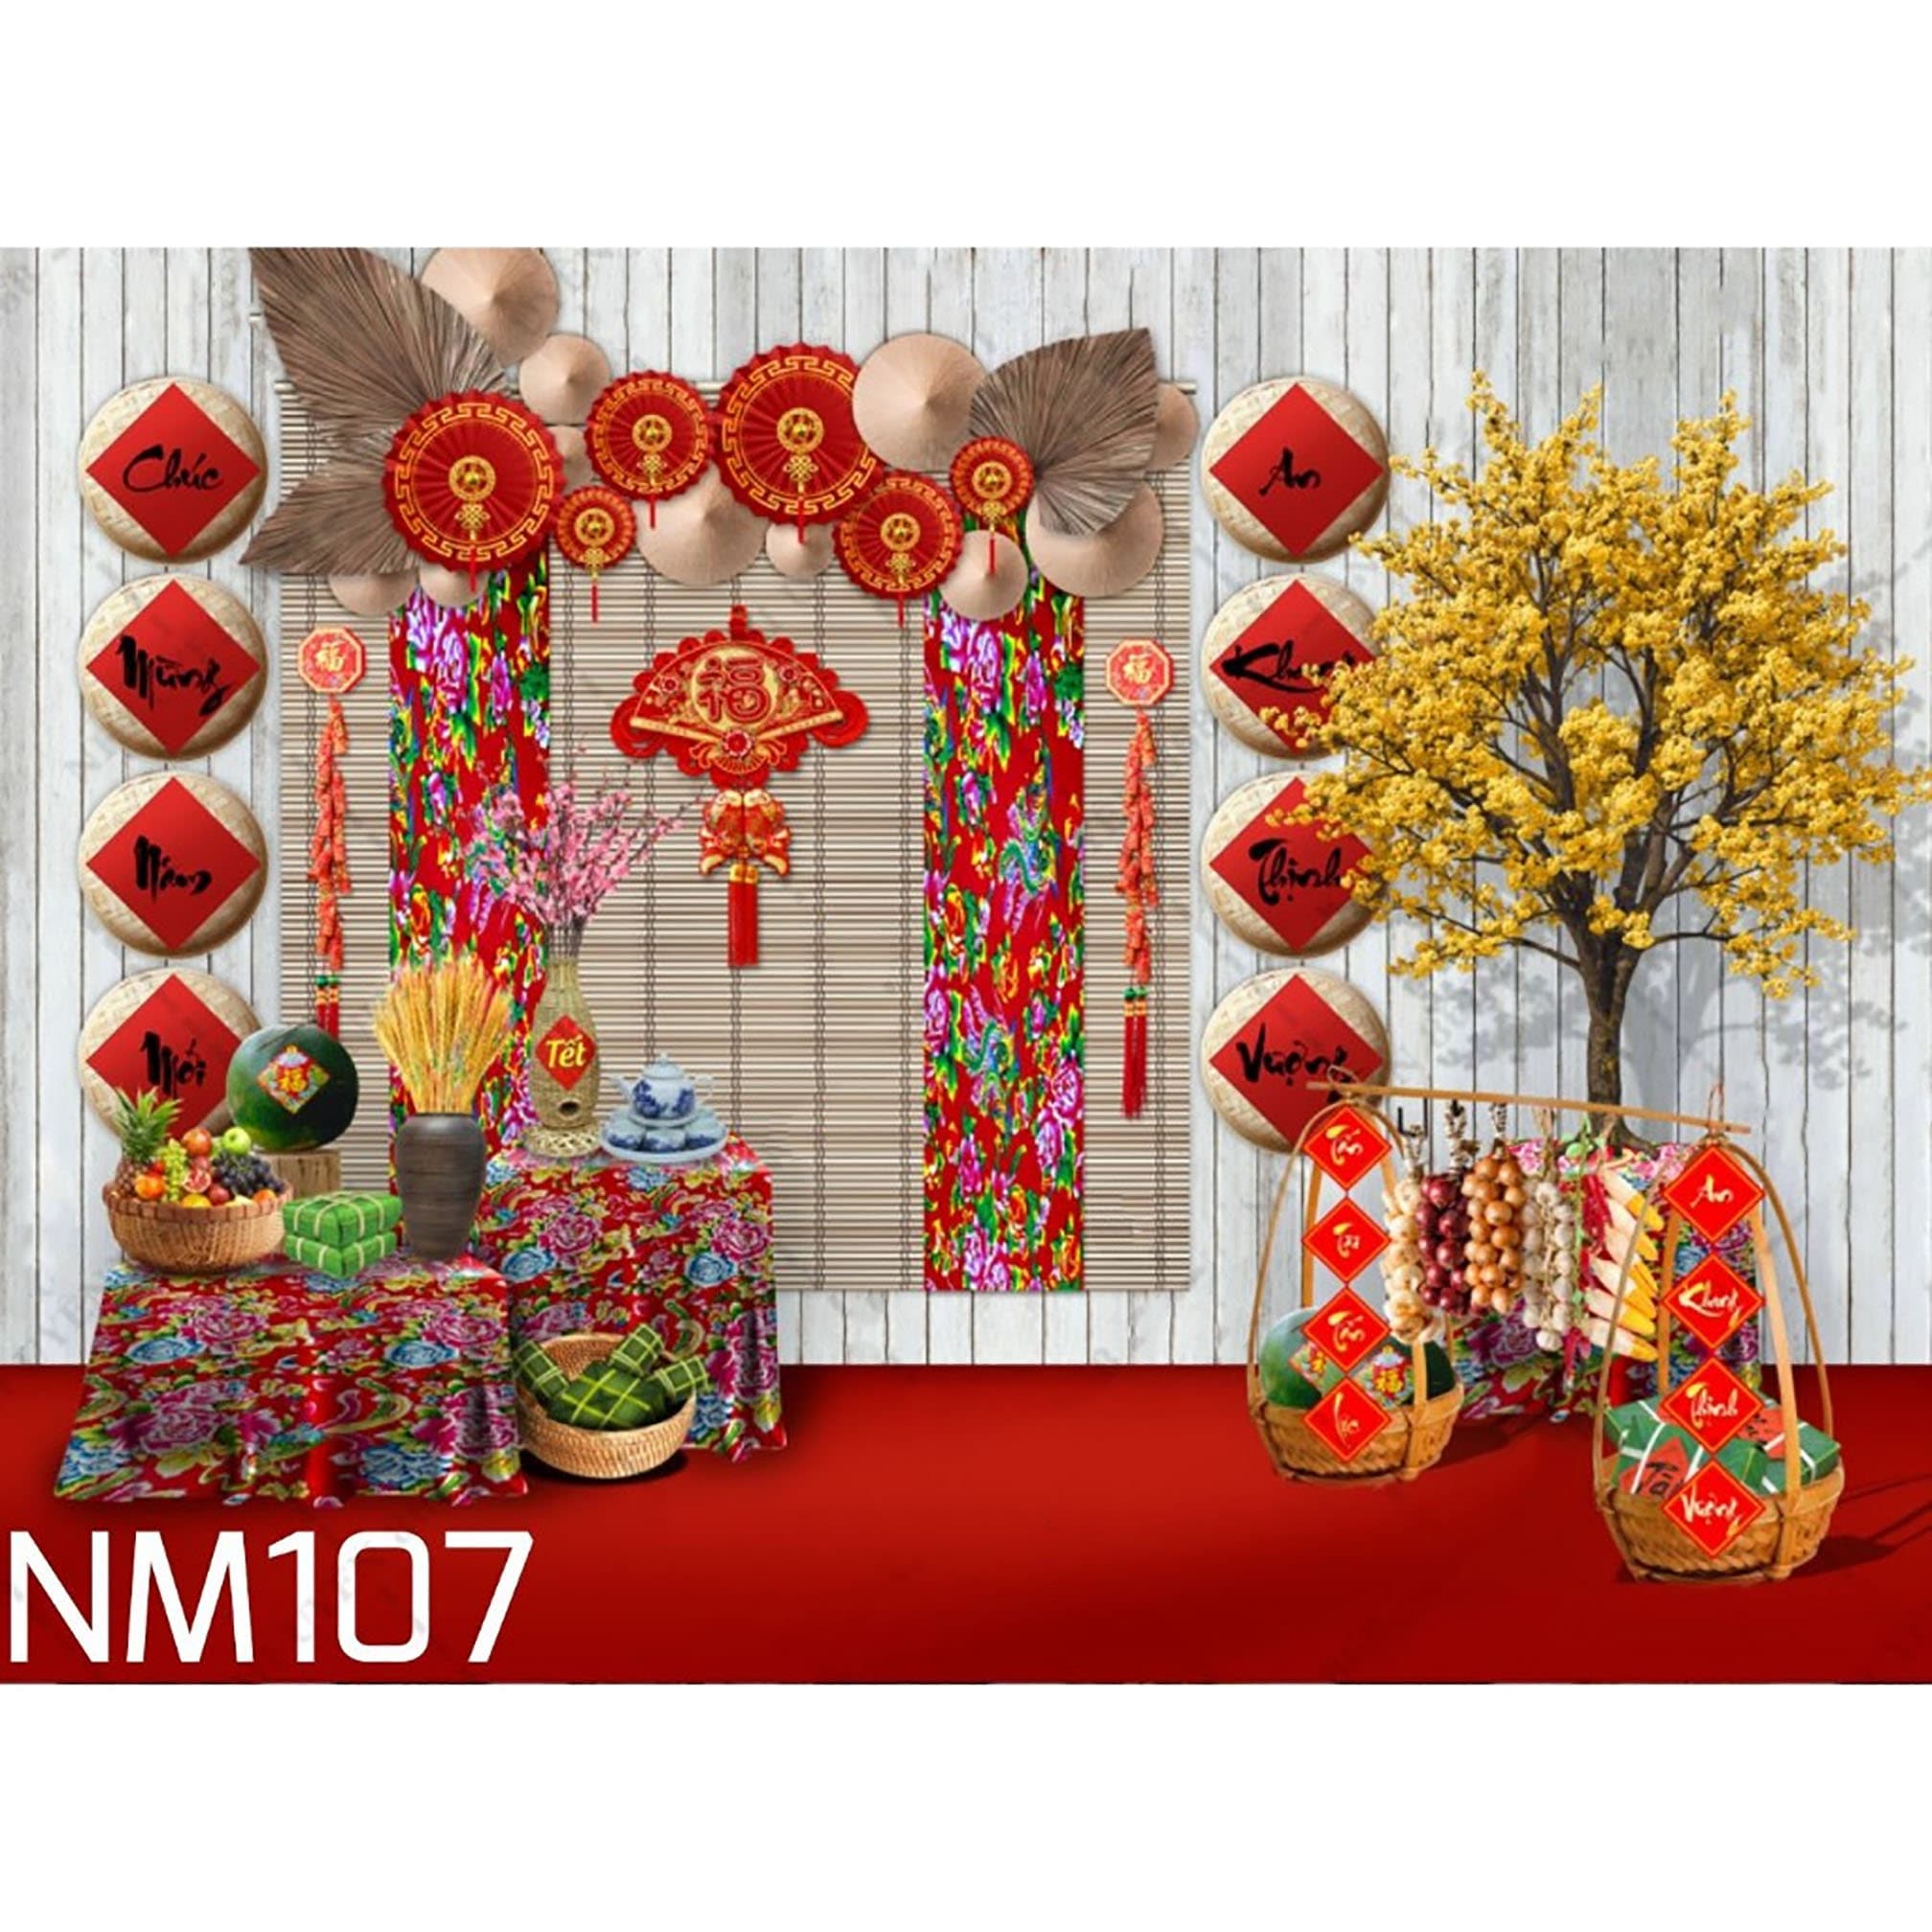 The best luxury lunar new year decoration service in Vietnam